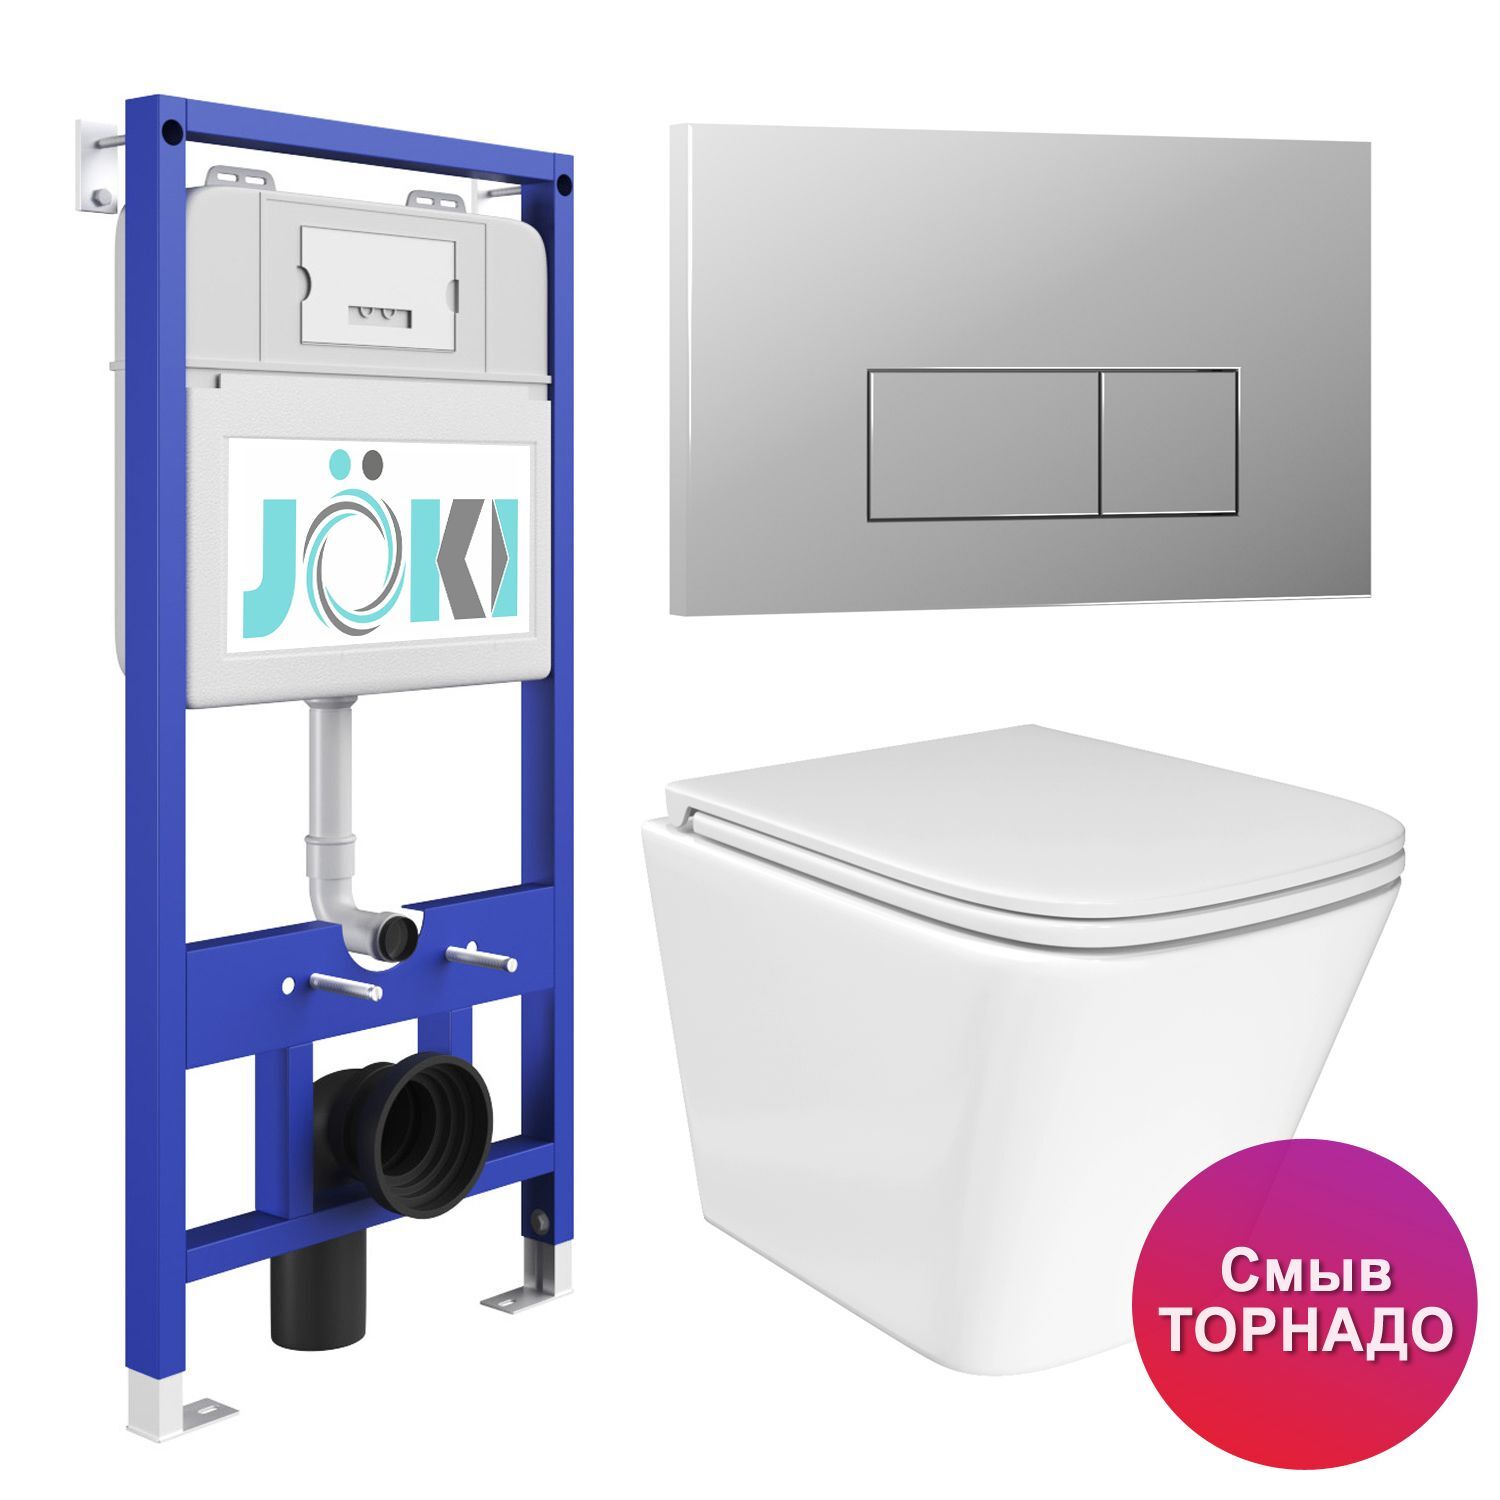 Комплект: JOKI Инсталляция JK01150+Кнопка JK202501CH хром+Verna T JK3031025 белый унитаз, смыв Торнадо